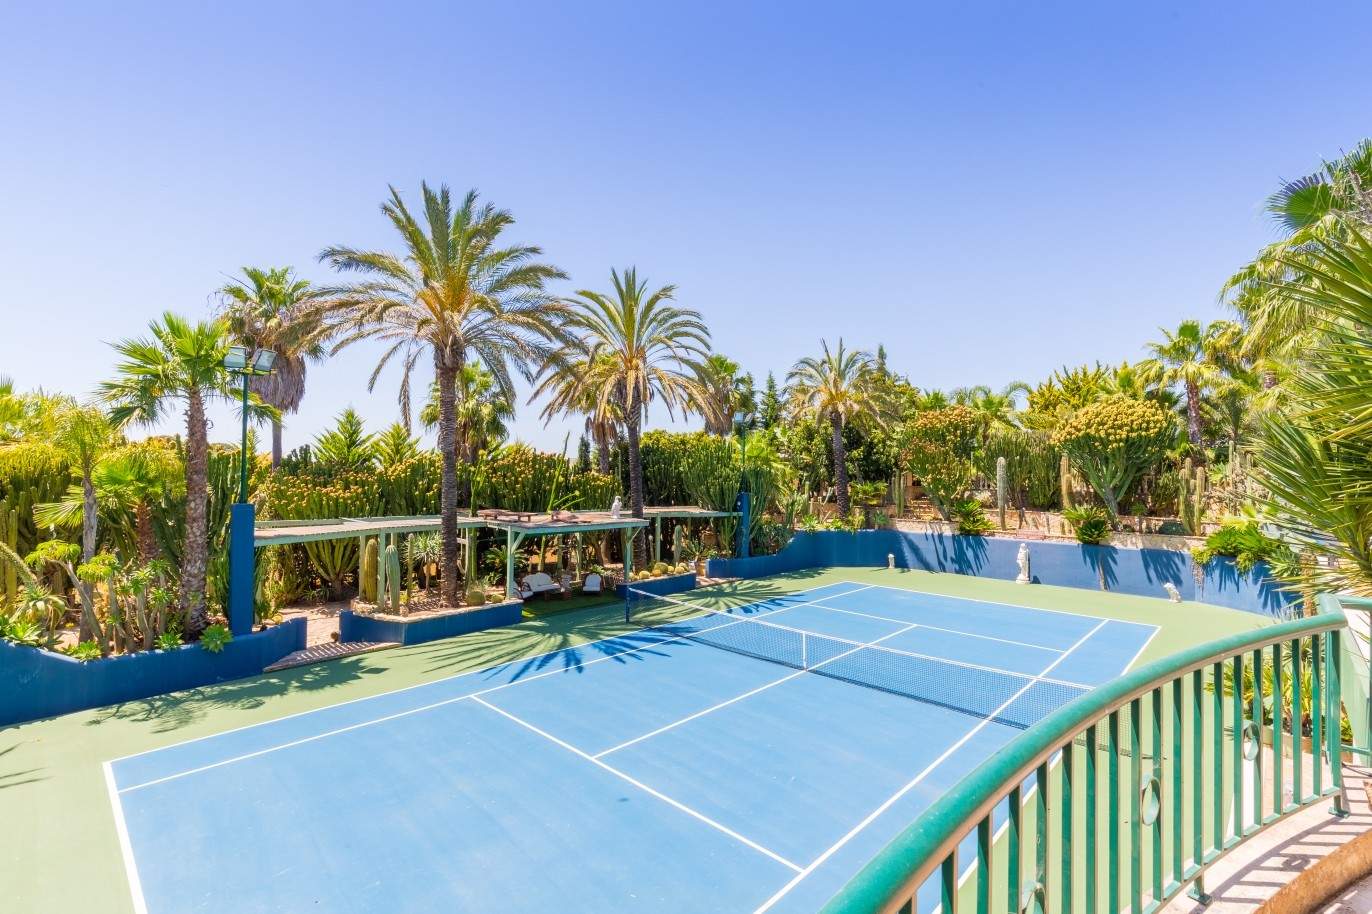 Piso en venta, piscina y pista de tenis, Albufeira, Algarve, Portugal_59656